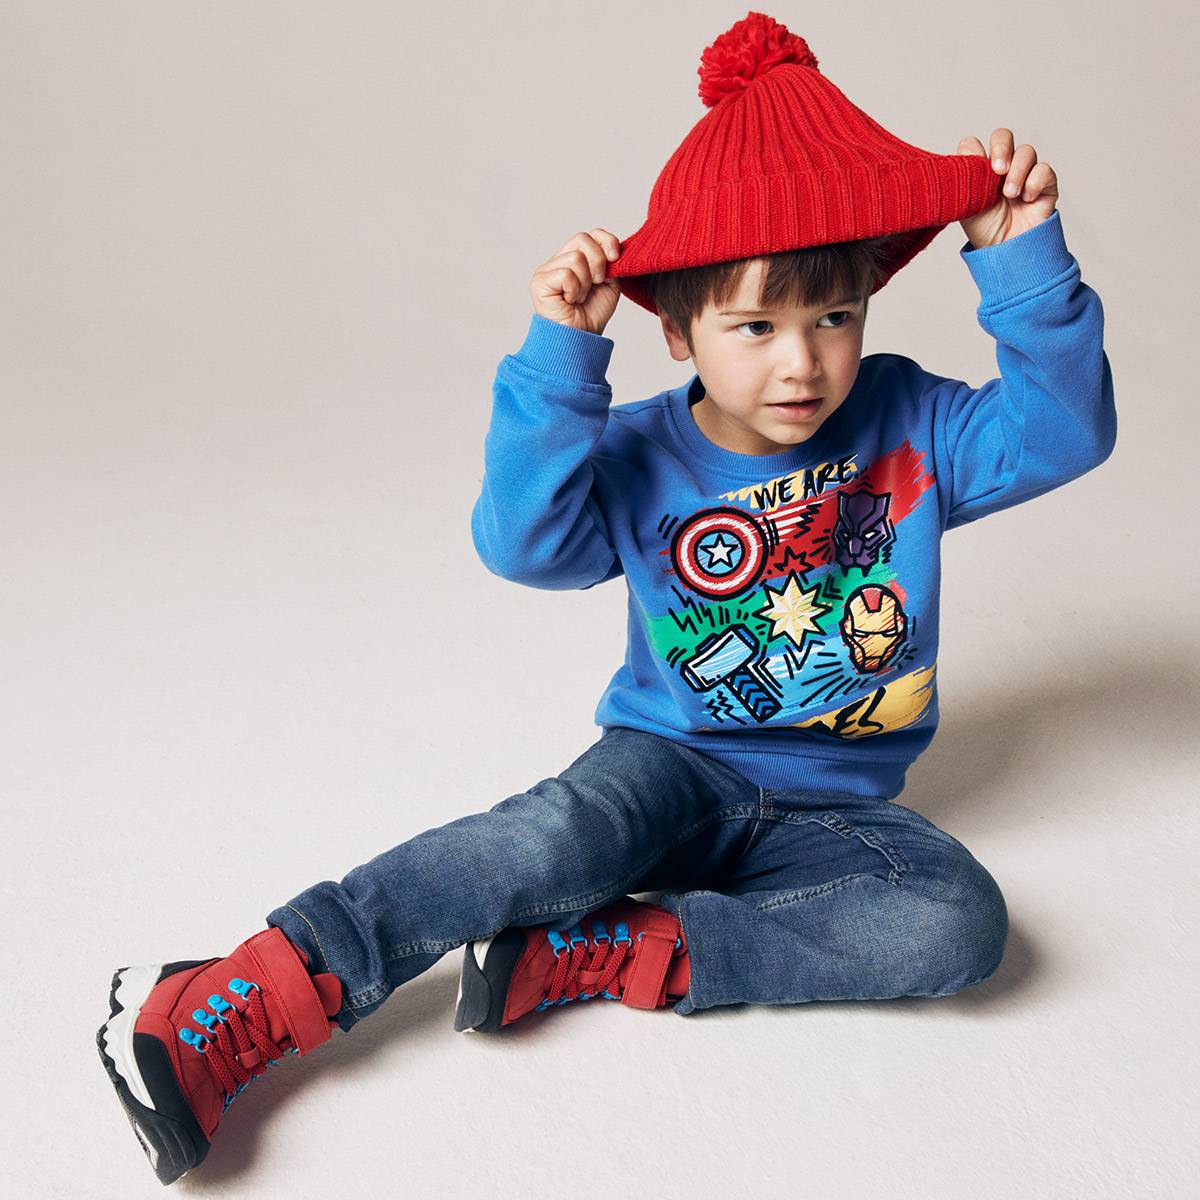 طفل يرتدي ملابس بطابع غير رسمي بألوان مُشرقة. ملابس الأطفال